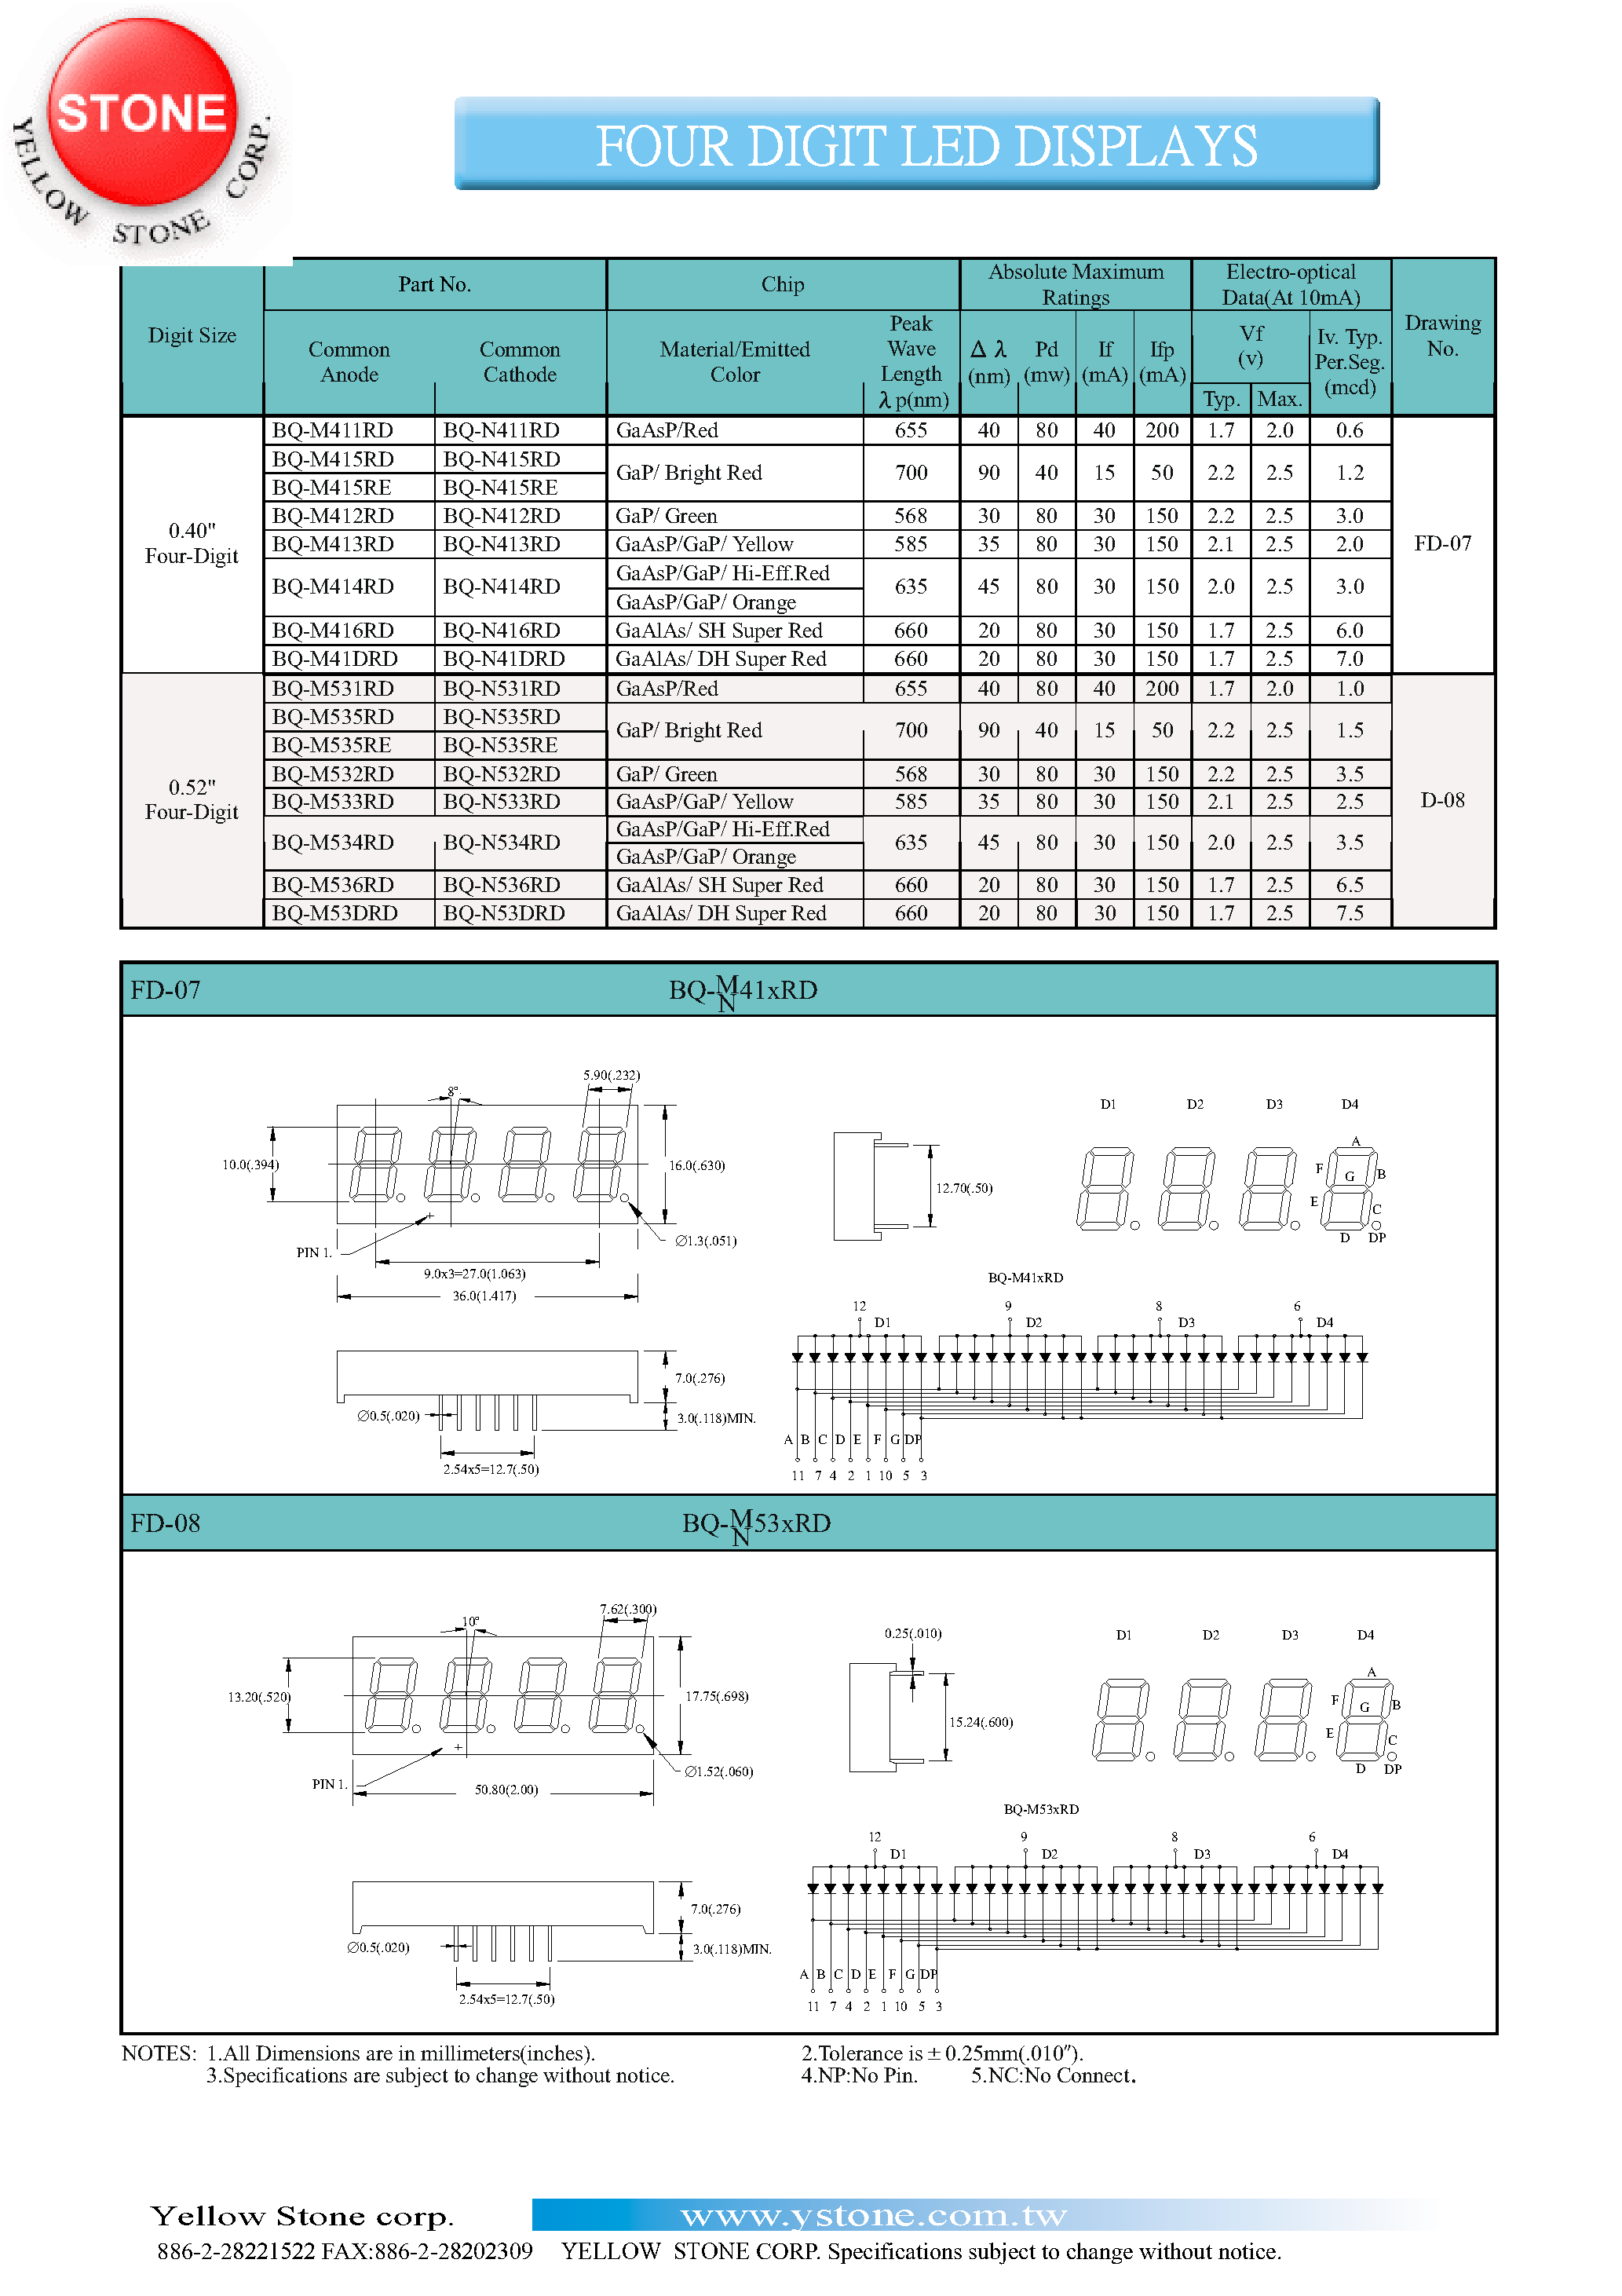 Даташит BQ-M411RD - FOUR DIGIT LED DISPLAYS страница 1